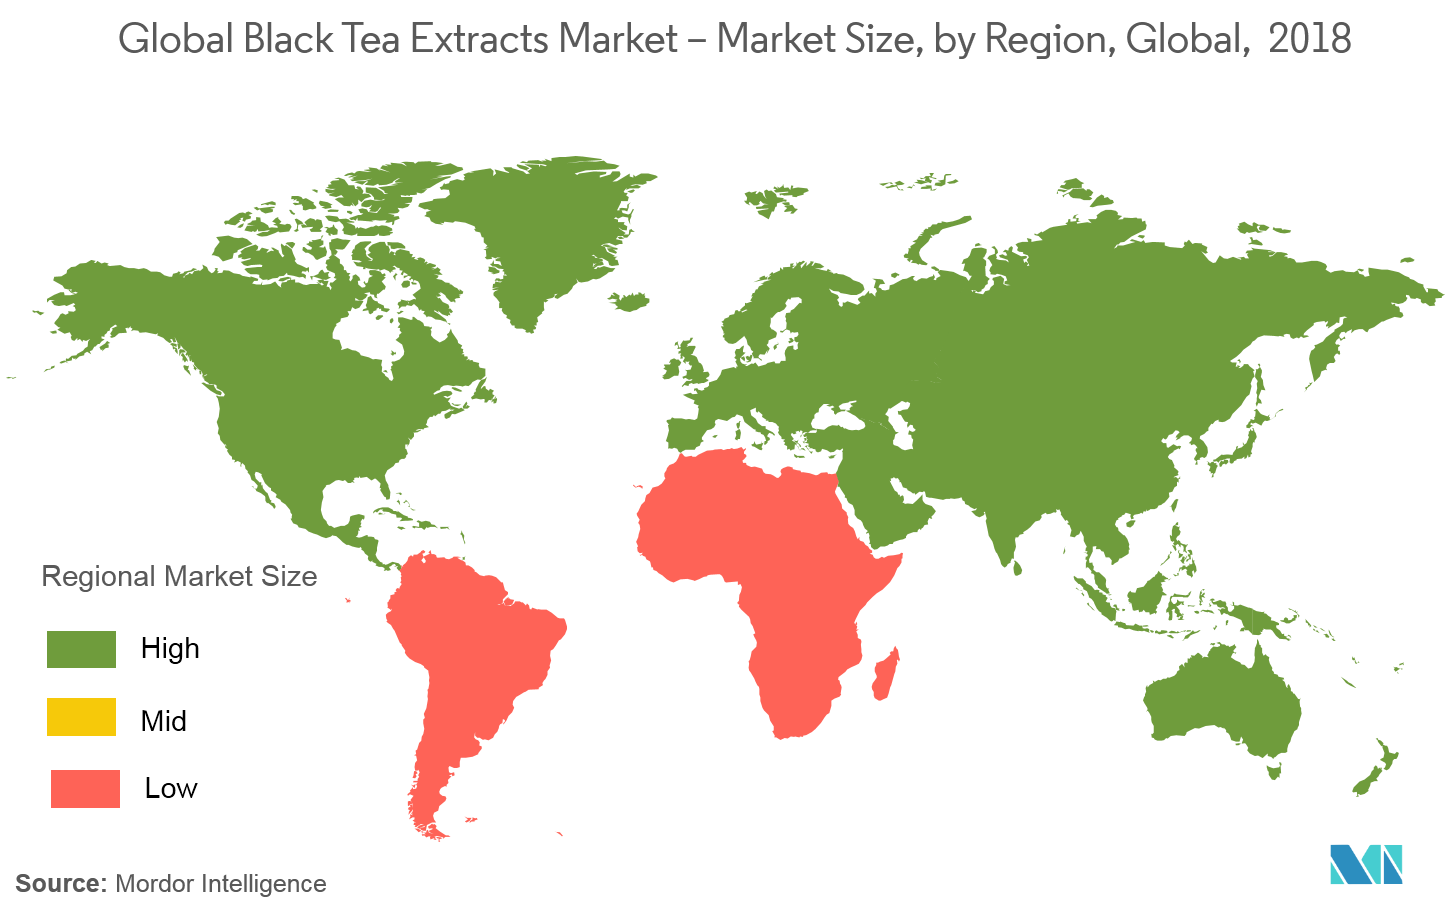 سوق مستخلصات الشاي الأسود - حجم السوق، حسب المنطقة، عالميًا، 2018